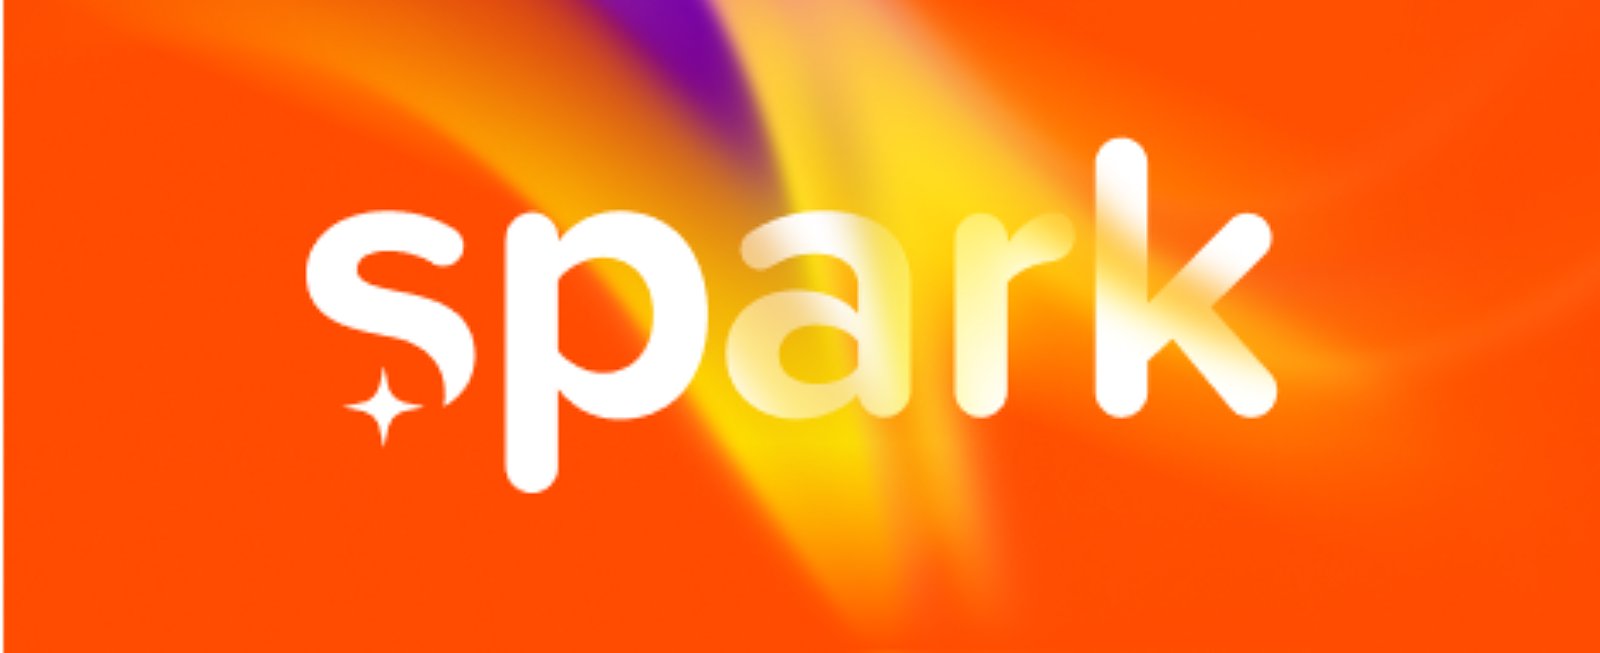 Spark logo banner 2022 10 05 180839 vchv